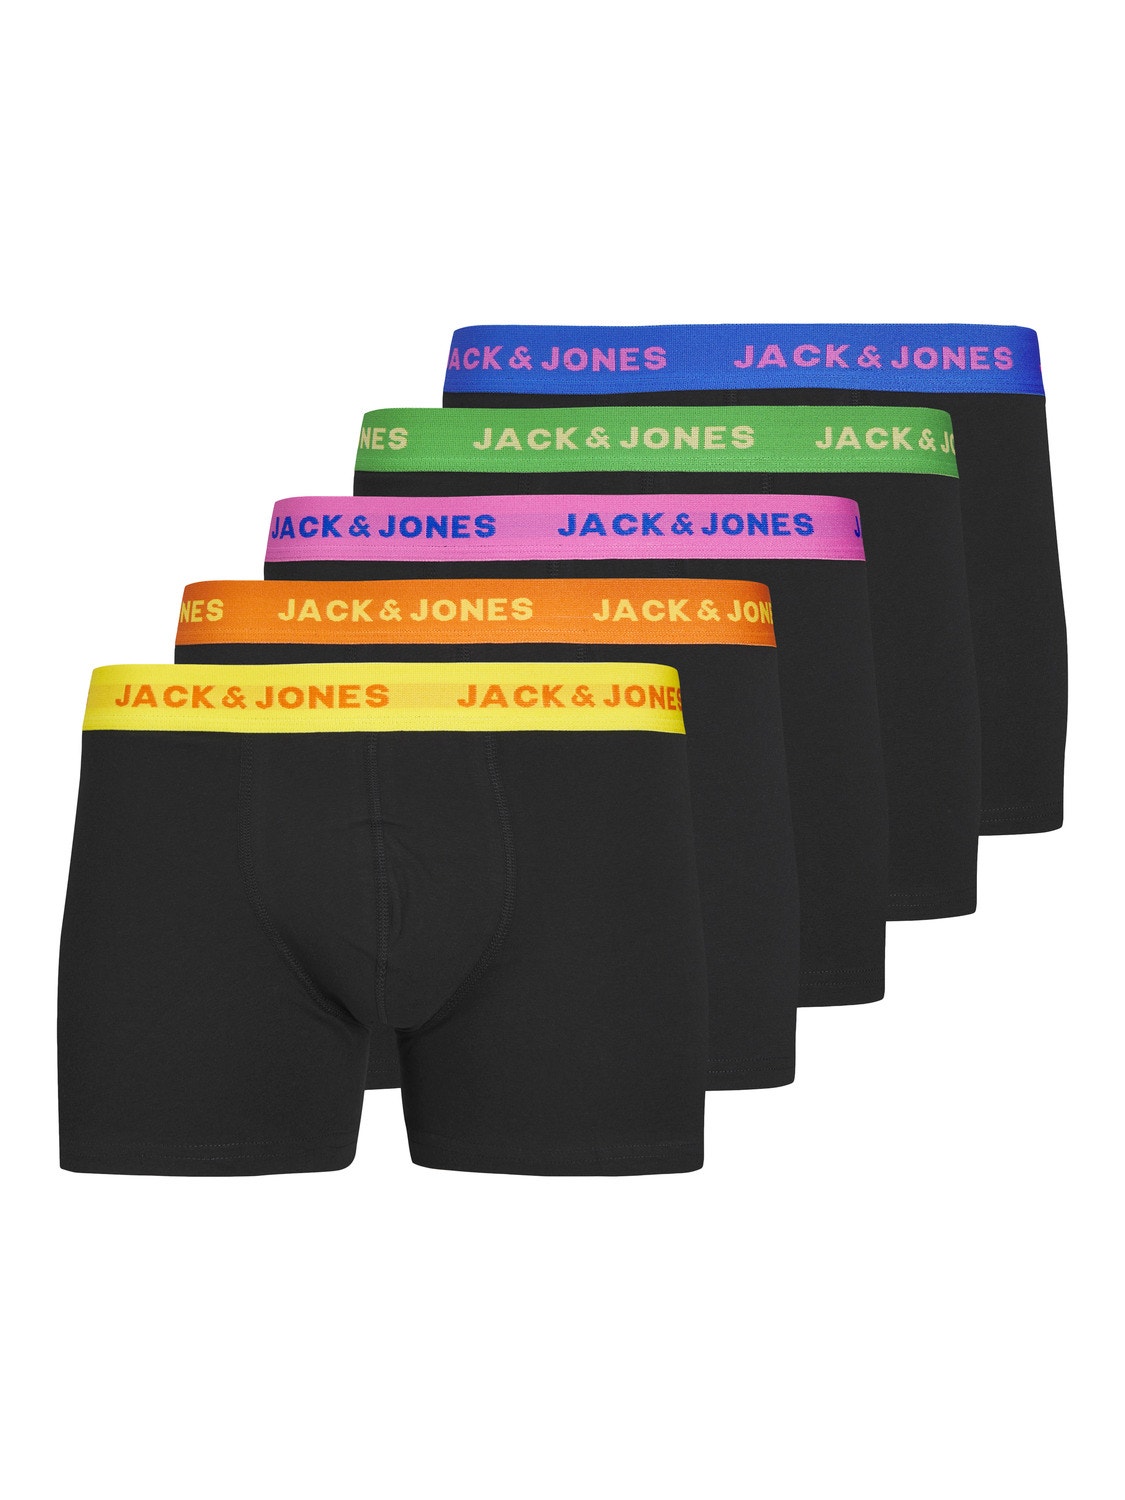 Jack & Jones 5-pack Trunks -Black - 12250613